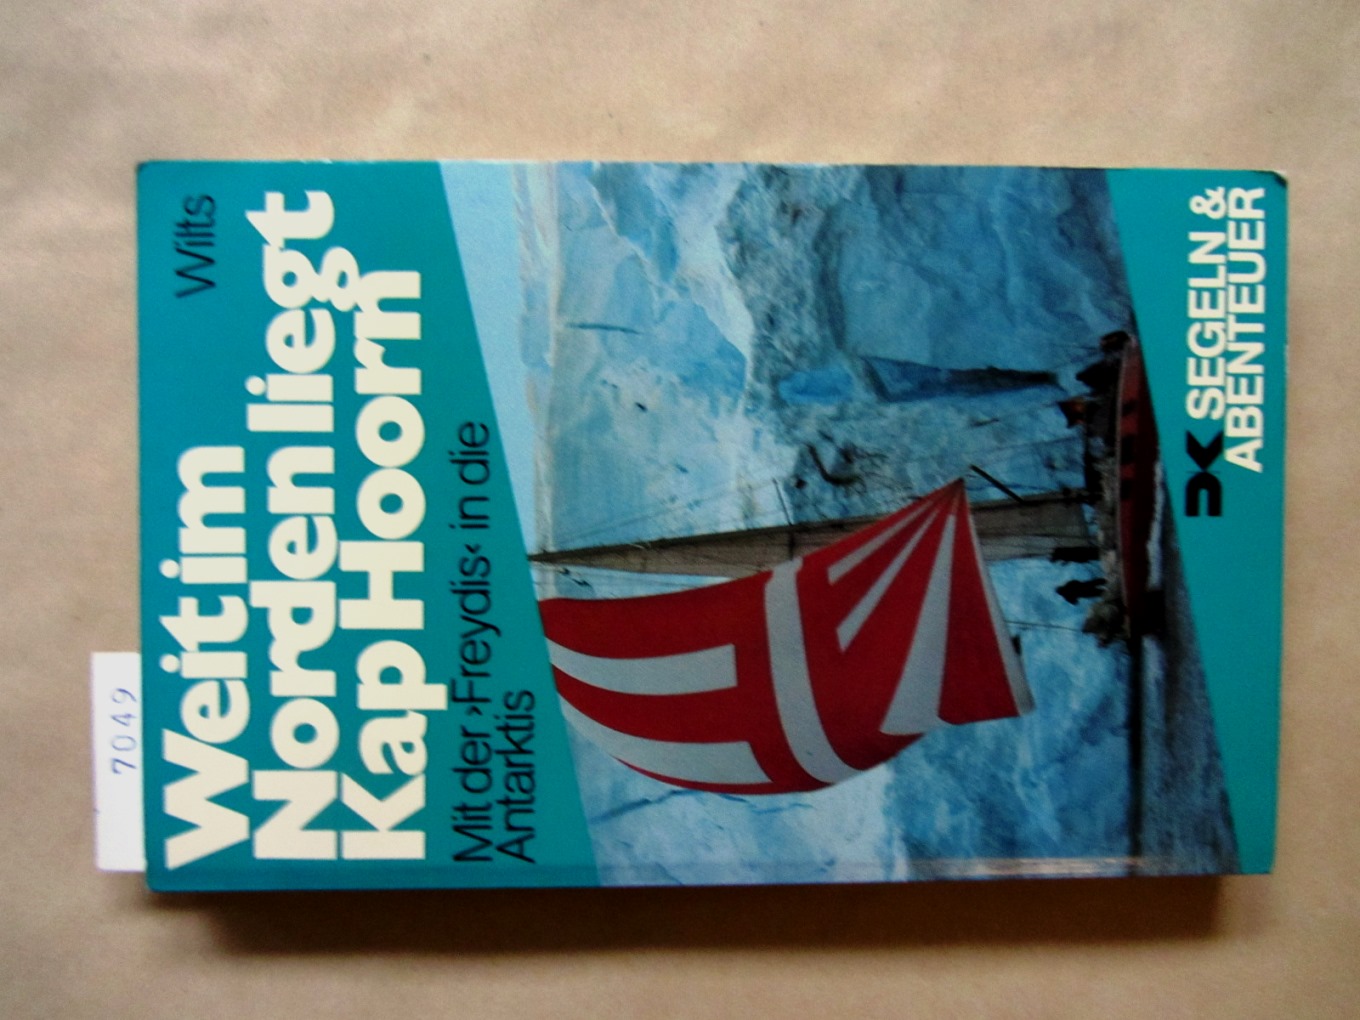 Wilts, Heide:  Weit im Norden liegt Kap Hoorn. Mit der "Freydis" in die Antarktis. ("Segeln & Abenteuer") 